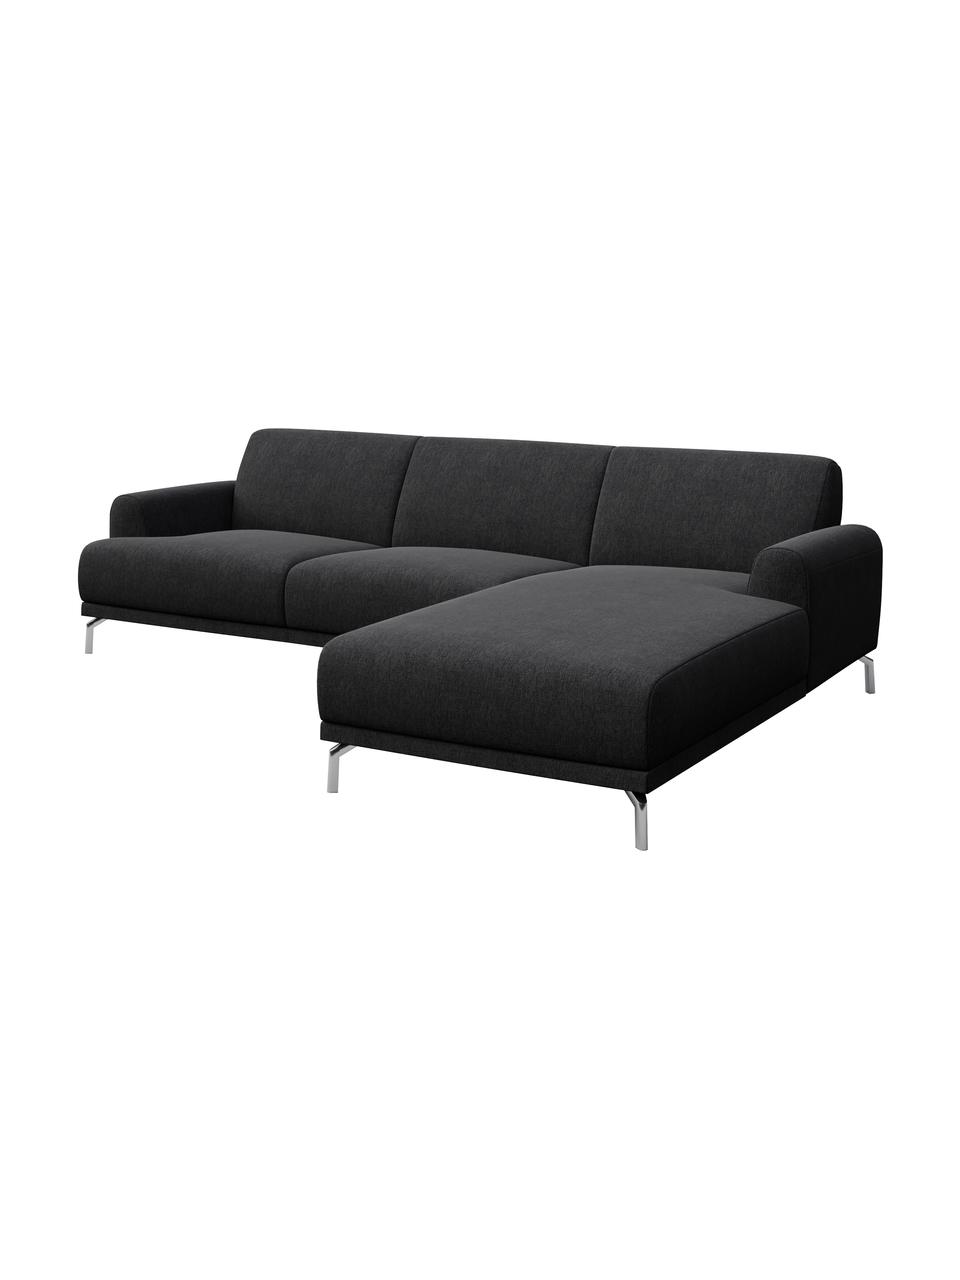 Sofa narożna Puzo, Tapicerka: 100% poliester, Nogi: metal lakierowany, Ciemny szary, S 240 x G 165 cm